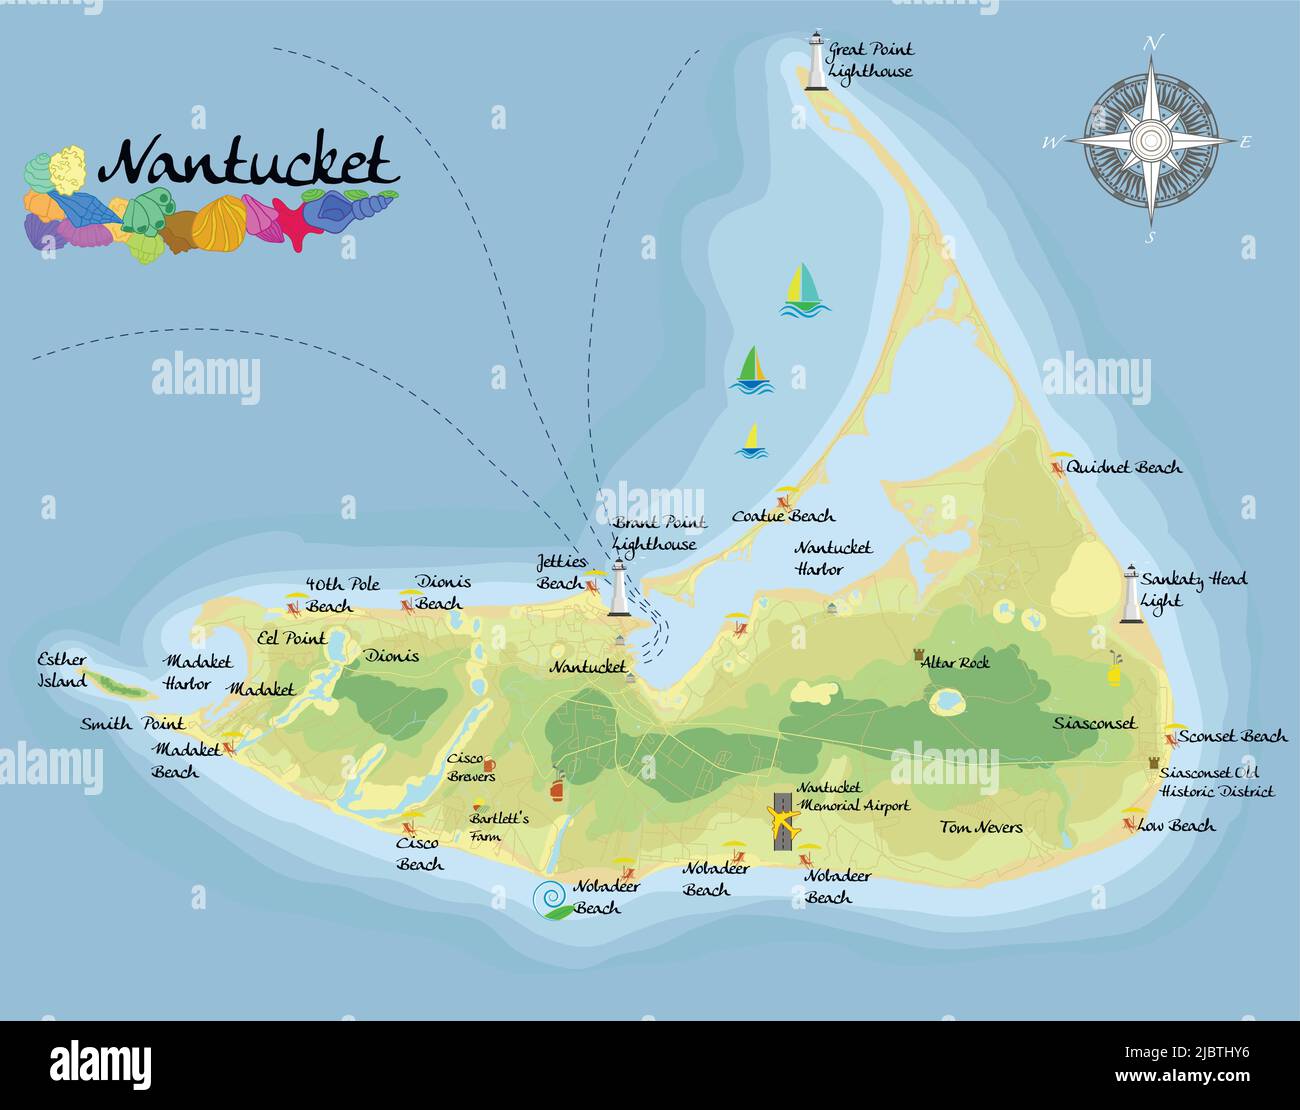 Isola di Nantucket. Mappa di sfondo satellitare realistica con designazione di spiagge, luoghi di riposo e di intrattenimento. Disegnata con precisione cartografica Illustrazione Vettoriale